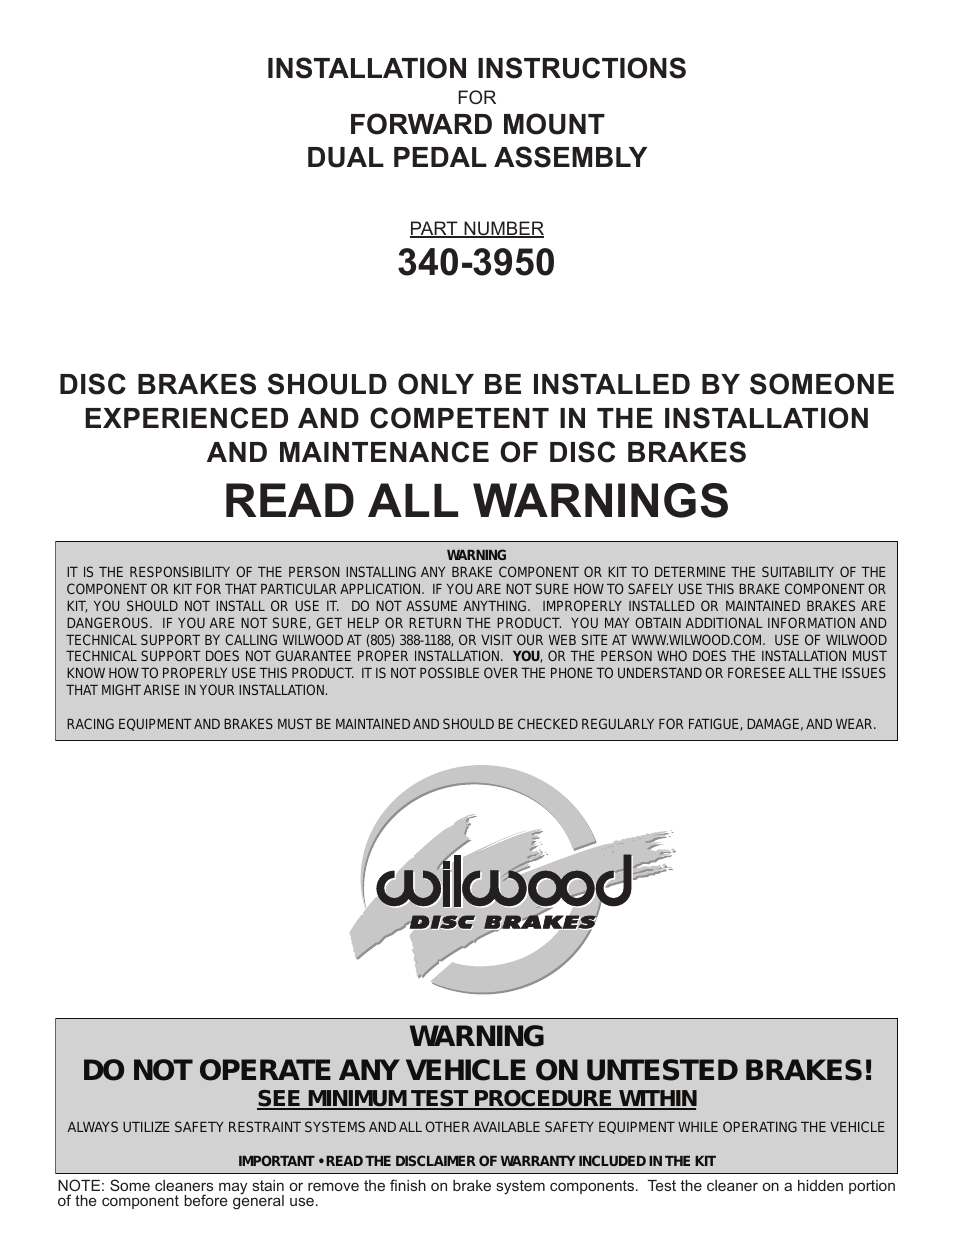 Brake & Clutch Pedal Description